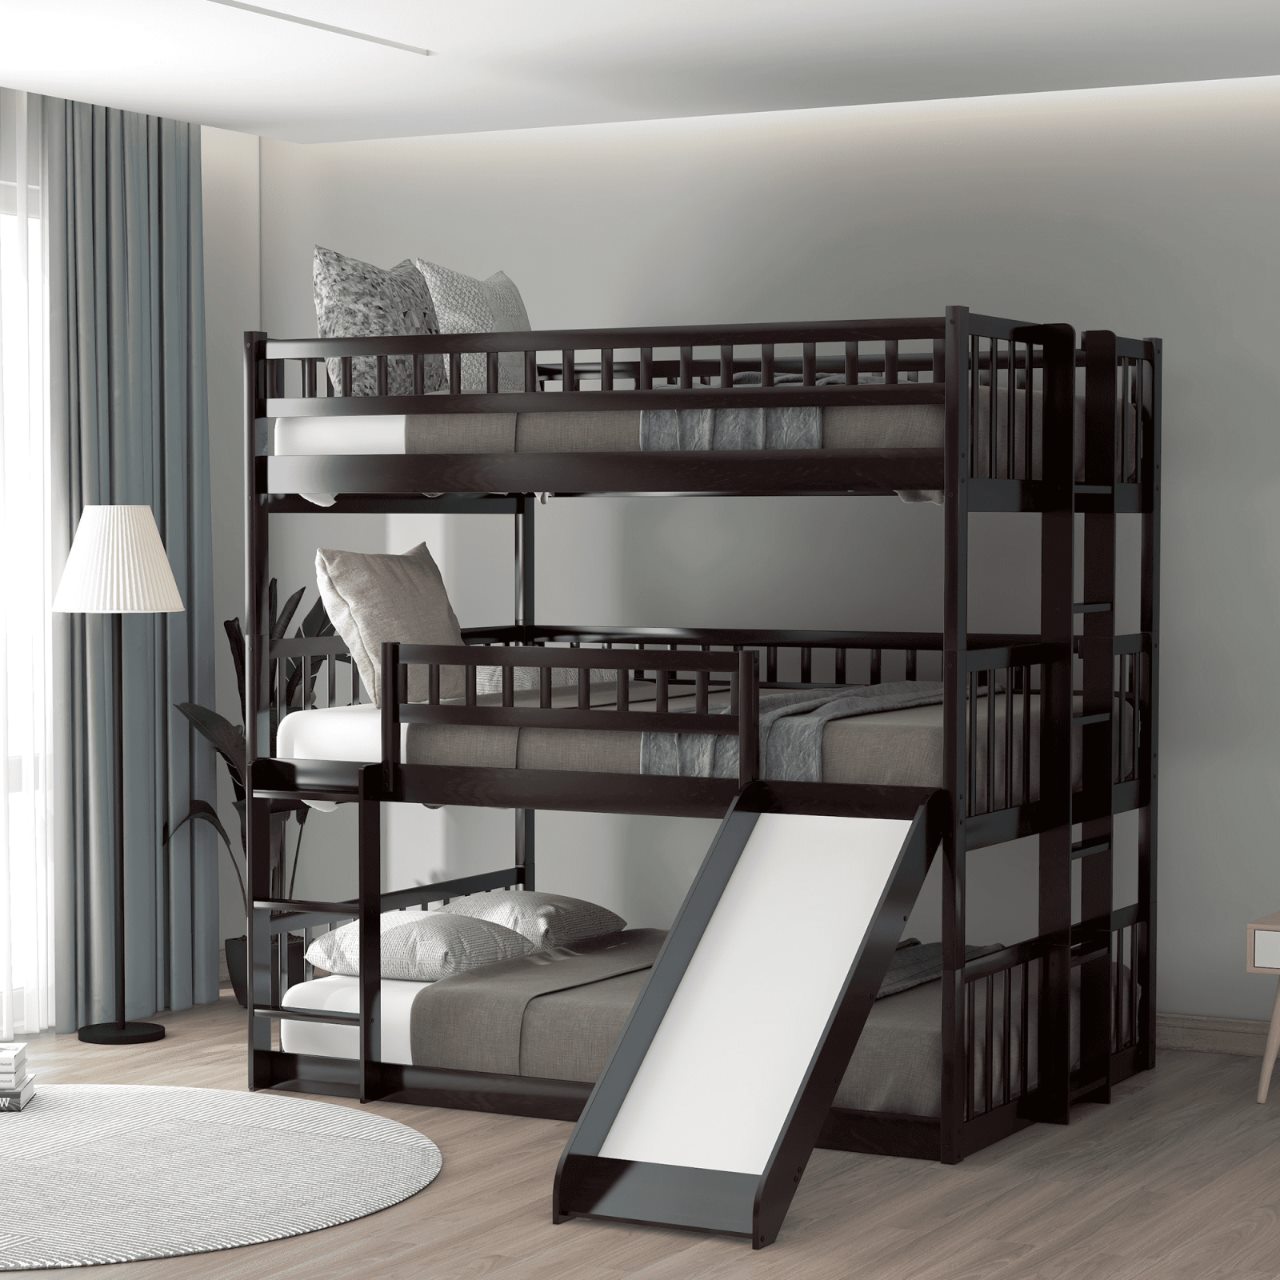 Mẫu giường 3 tầng đẹp làm từ gỗ tự nhiên dành cho 3 người sử dụng